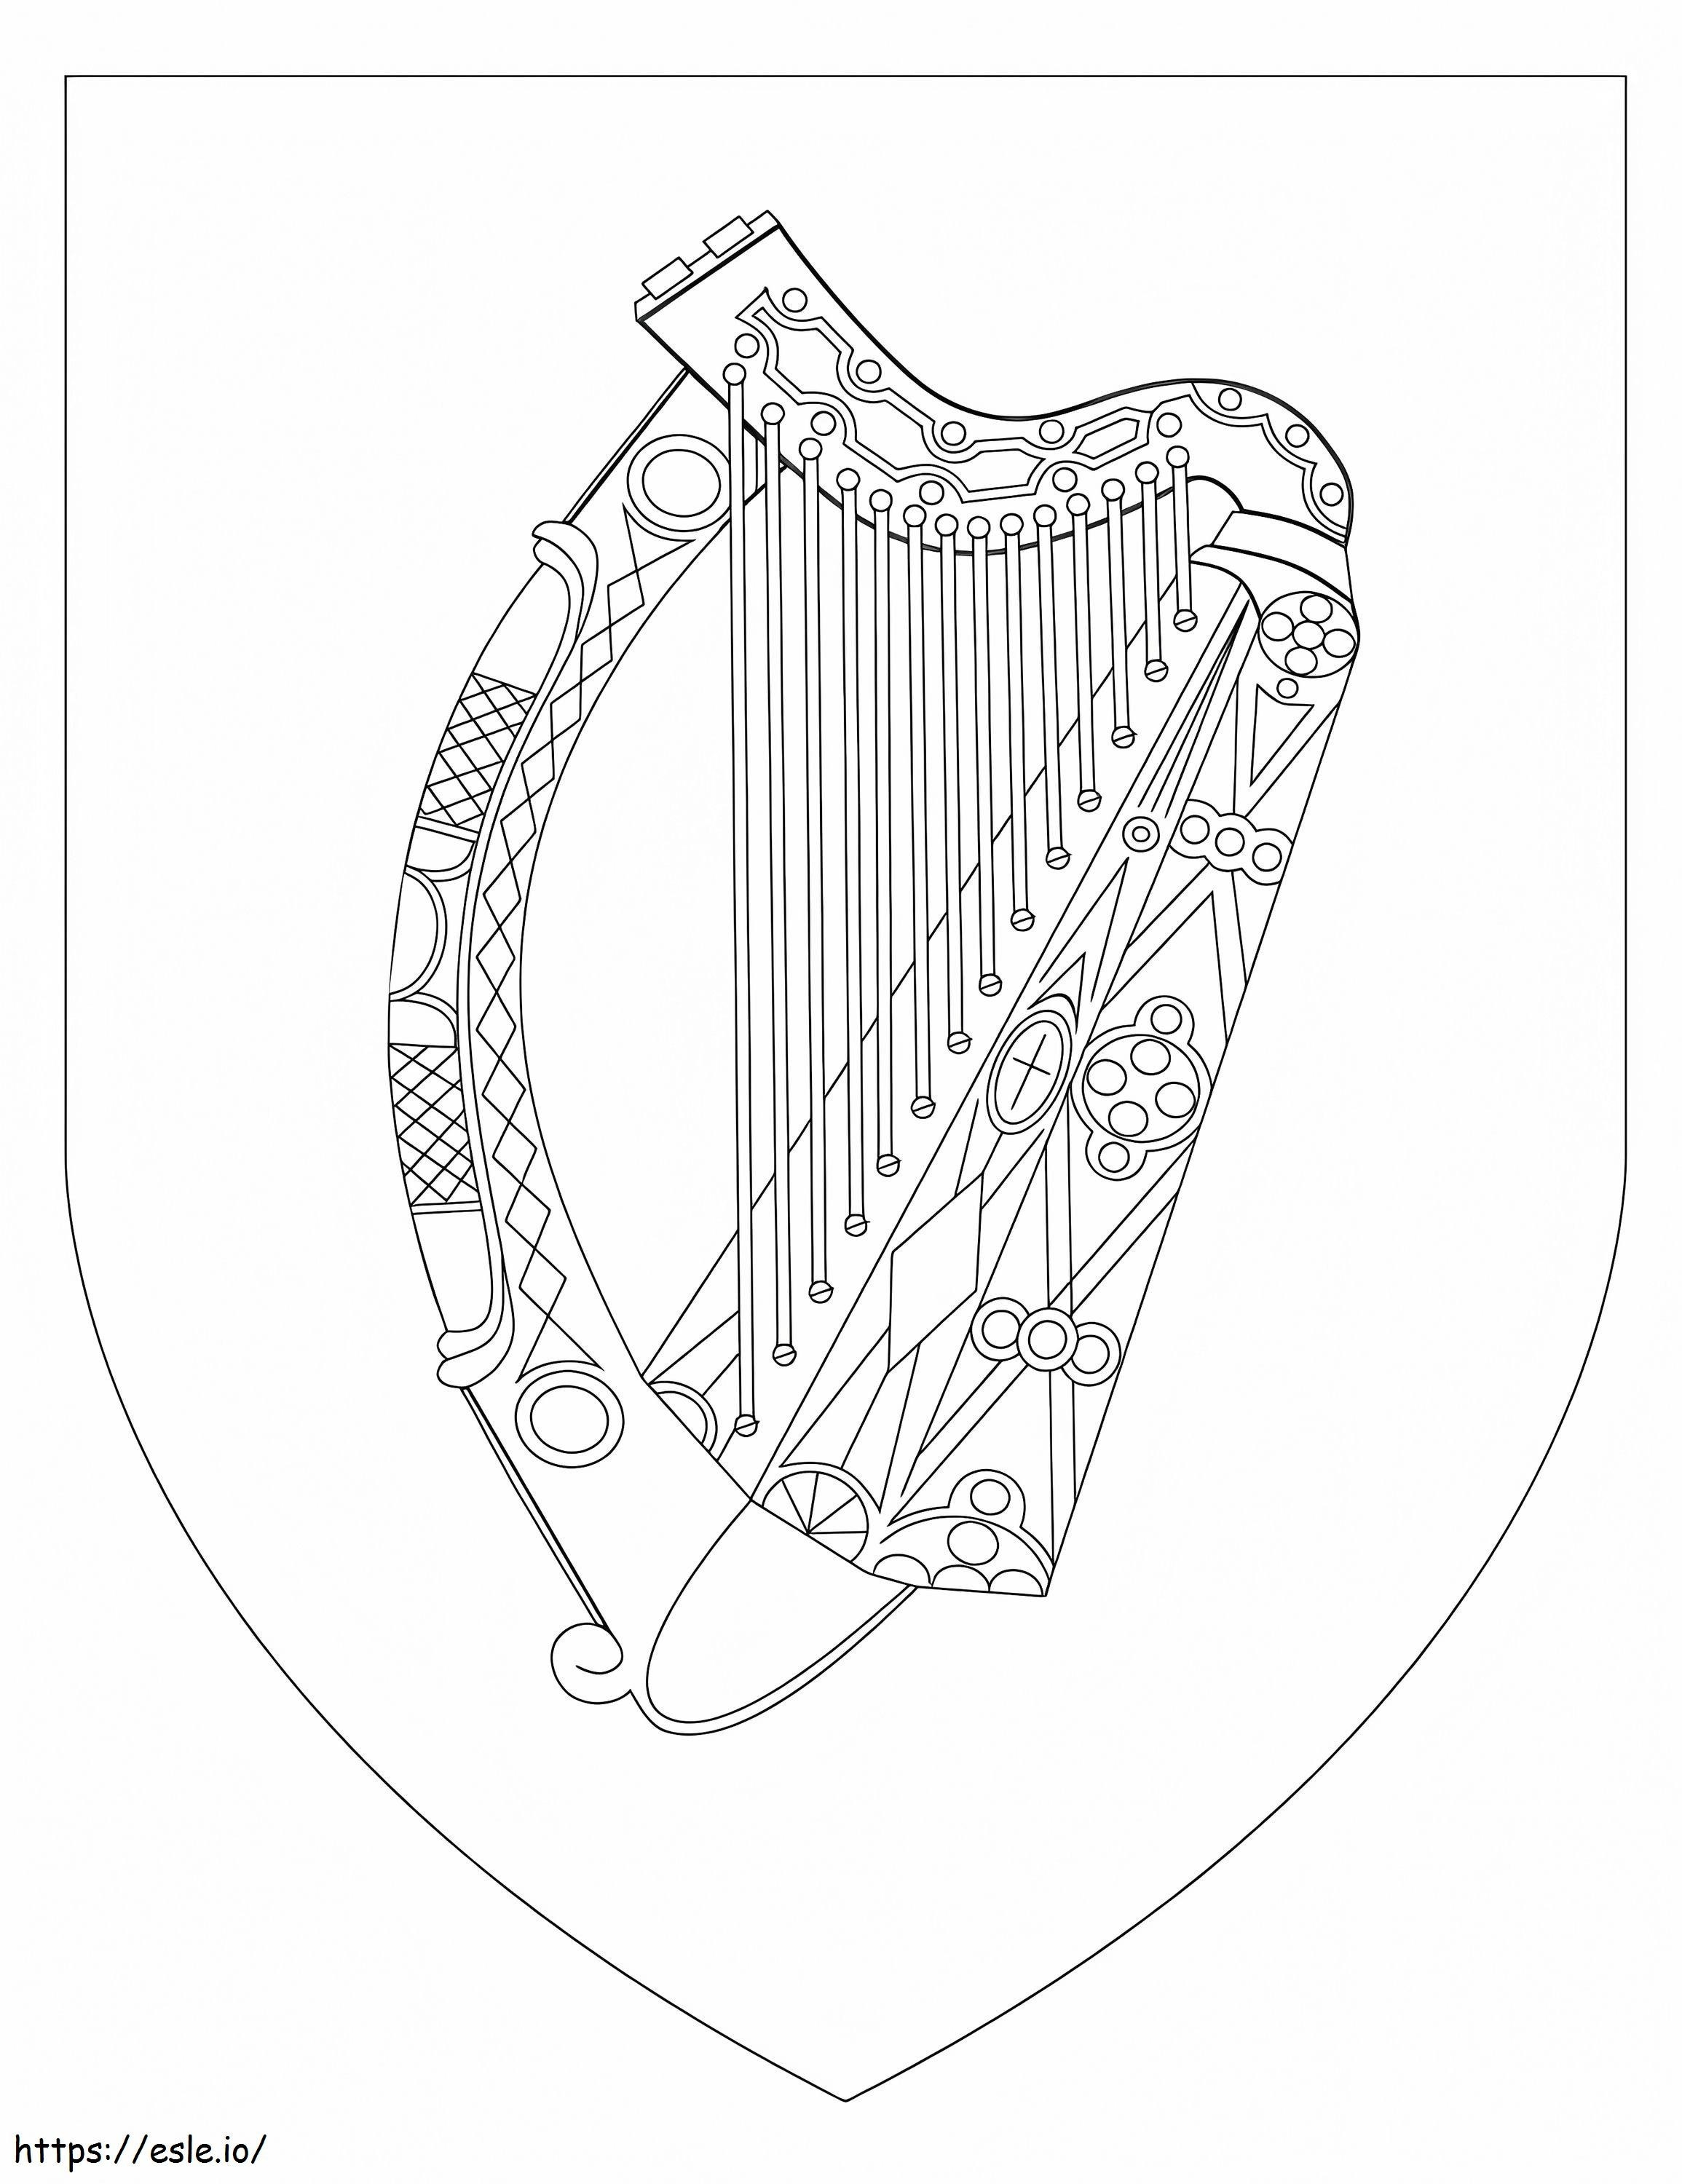 Irland-Wappen ausmalbilder